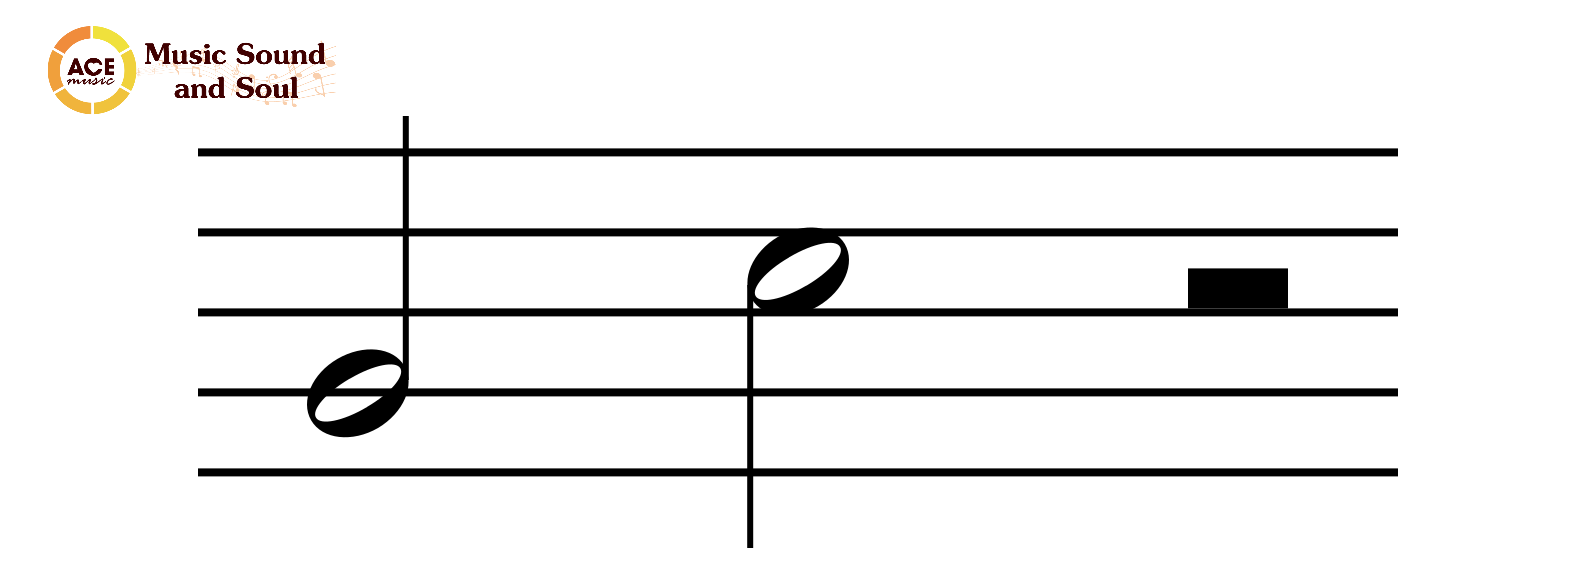 Trong âm nhạc, "nốt lặng trắng" (hay "rest trắng") là một ký hiệu biểu thị thời gian dừng lại hoàn toàn trong một đoạn nhạc